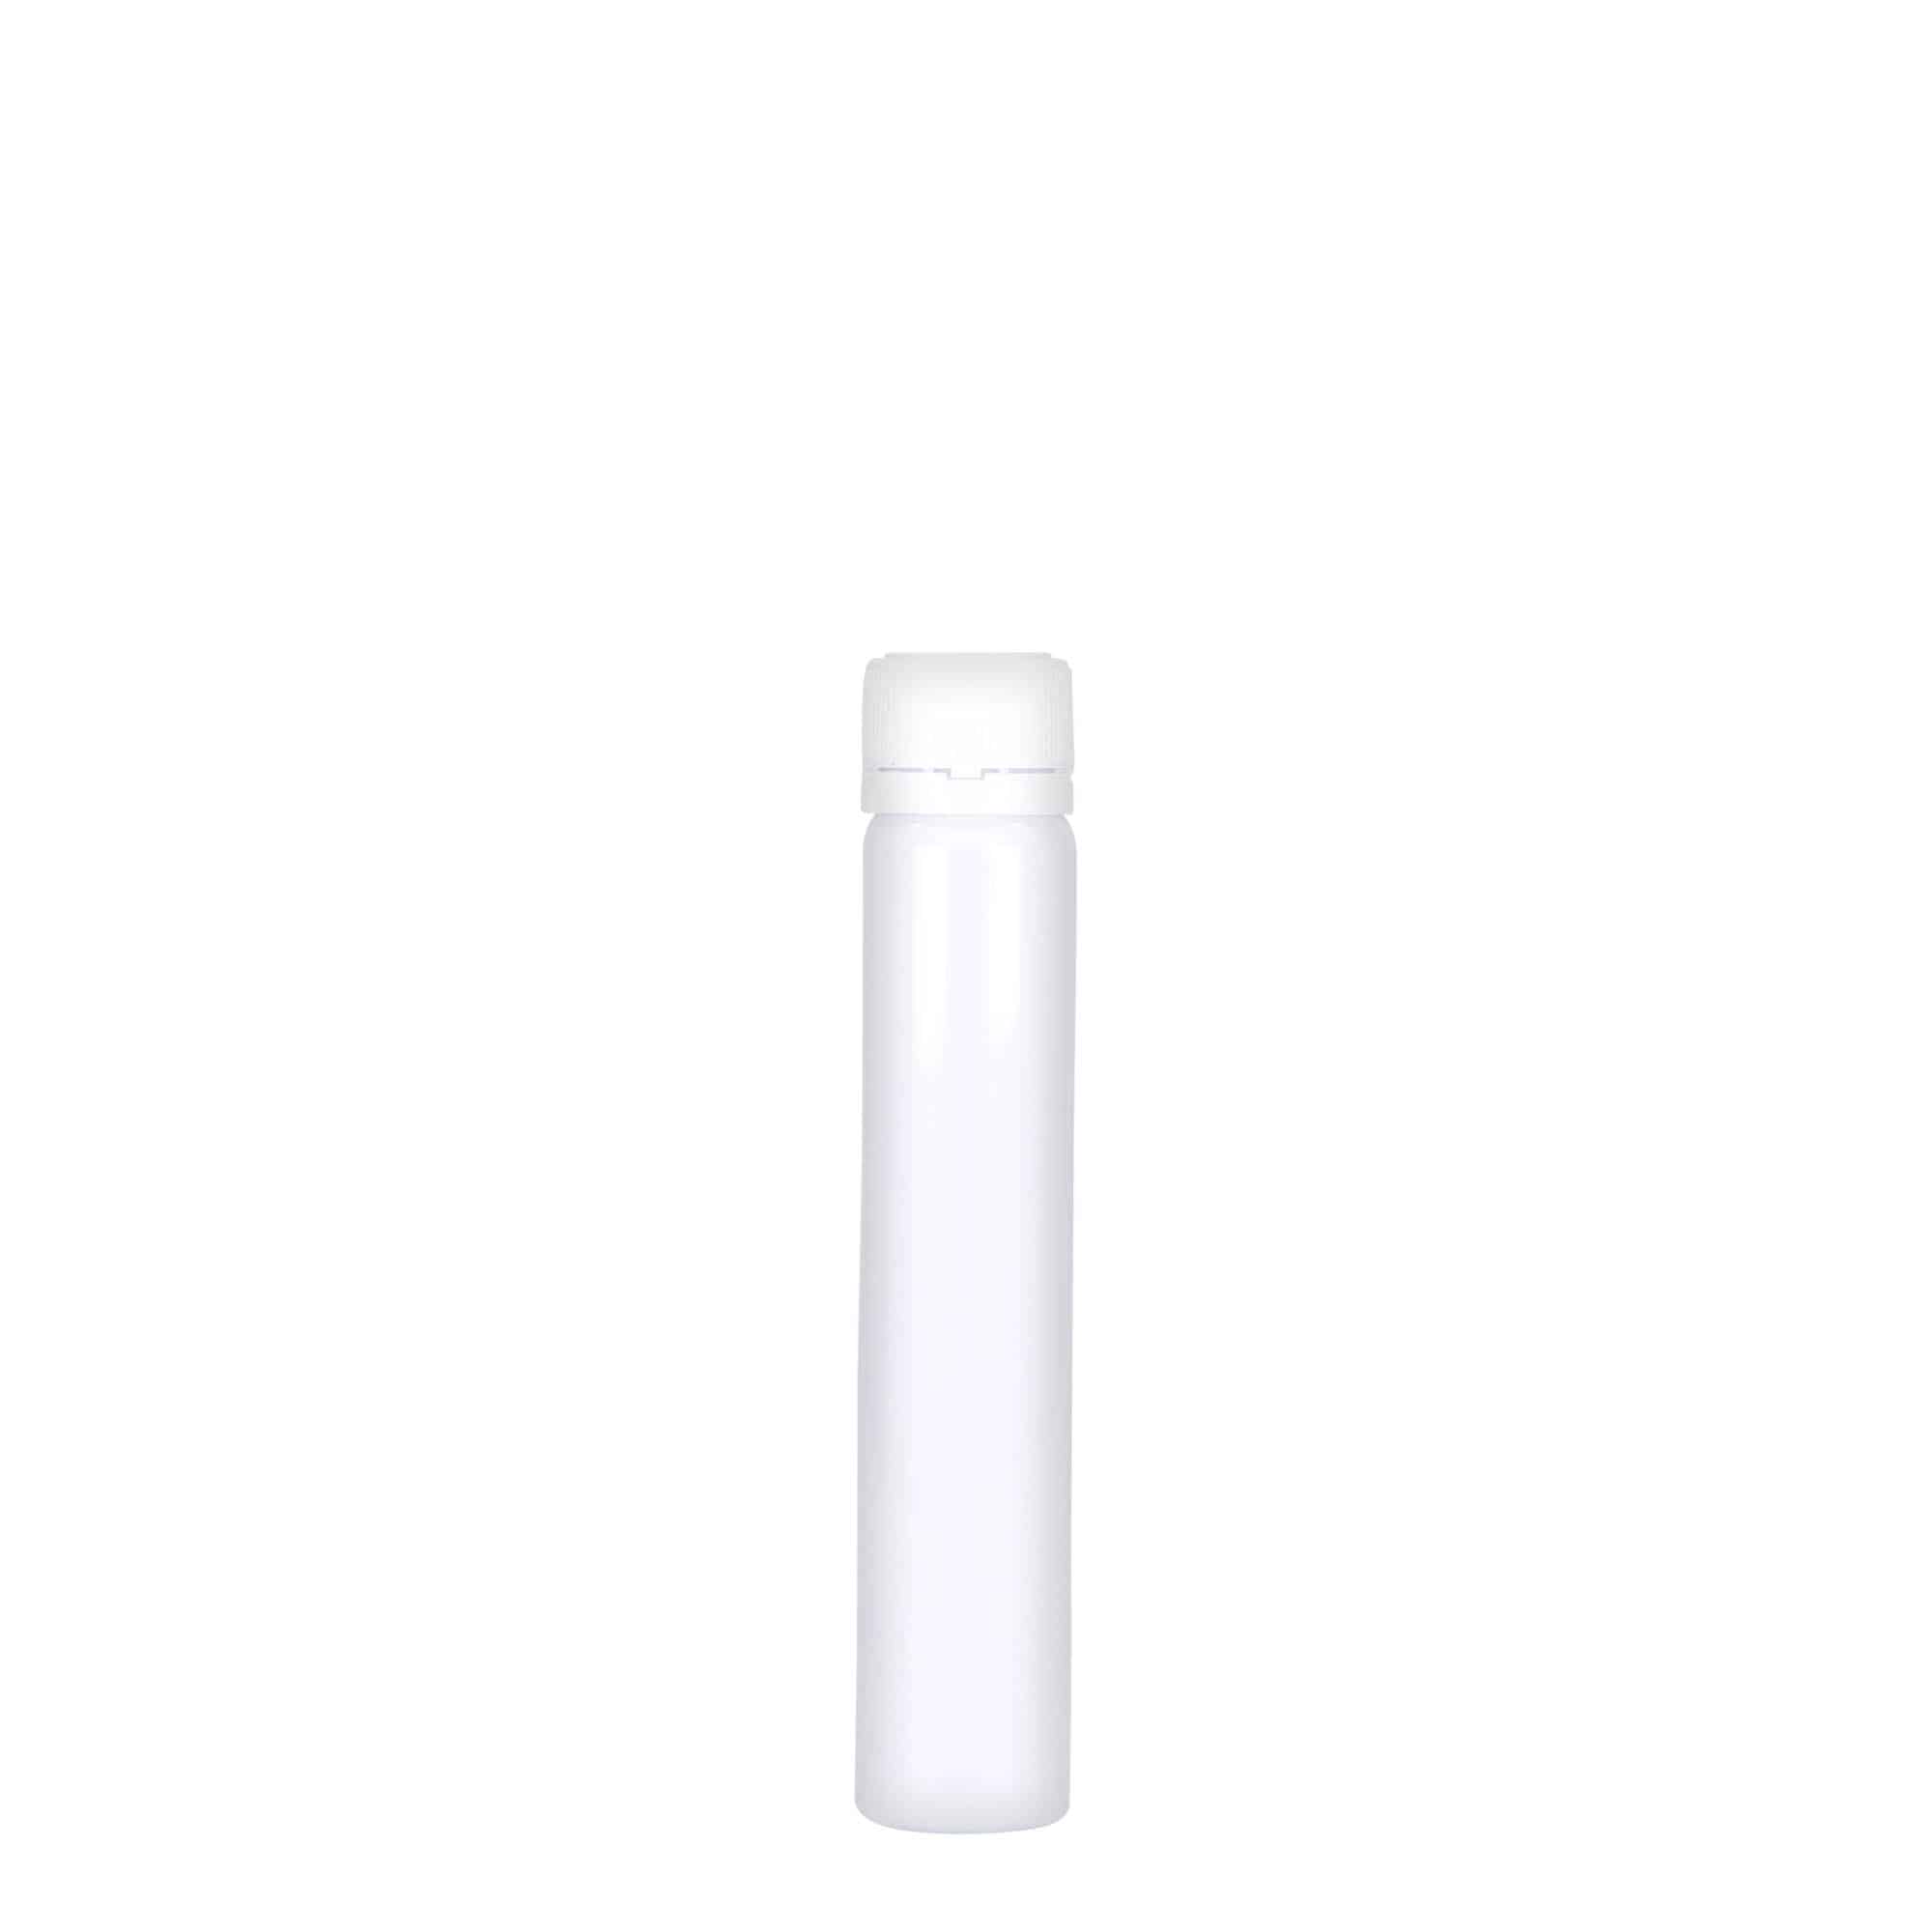 25 ml PET tube, plastic, white, closure: screw cap